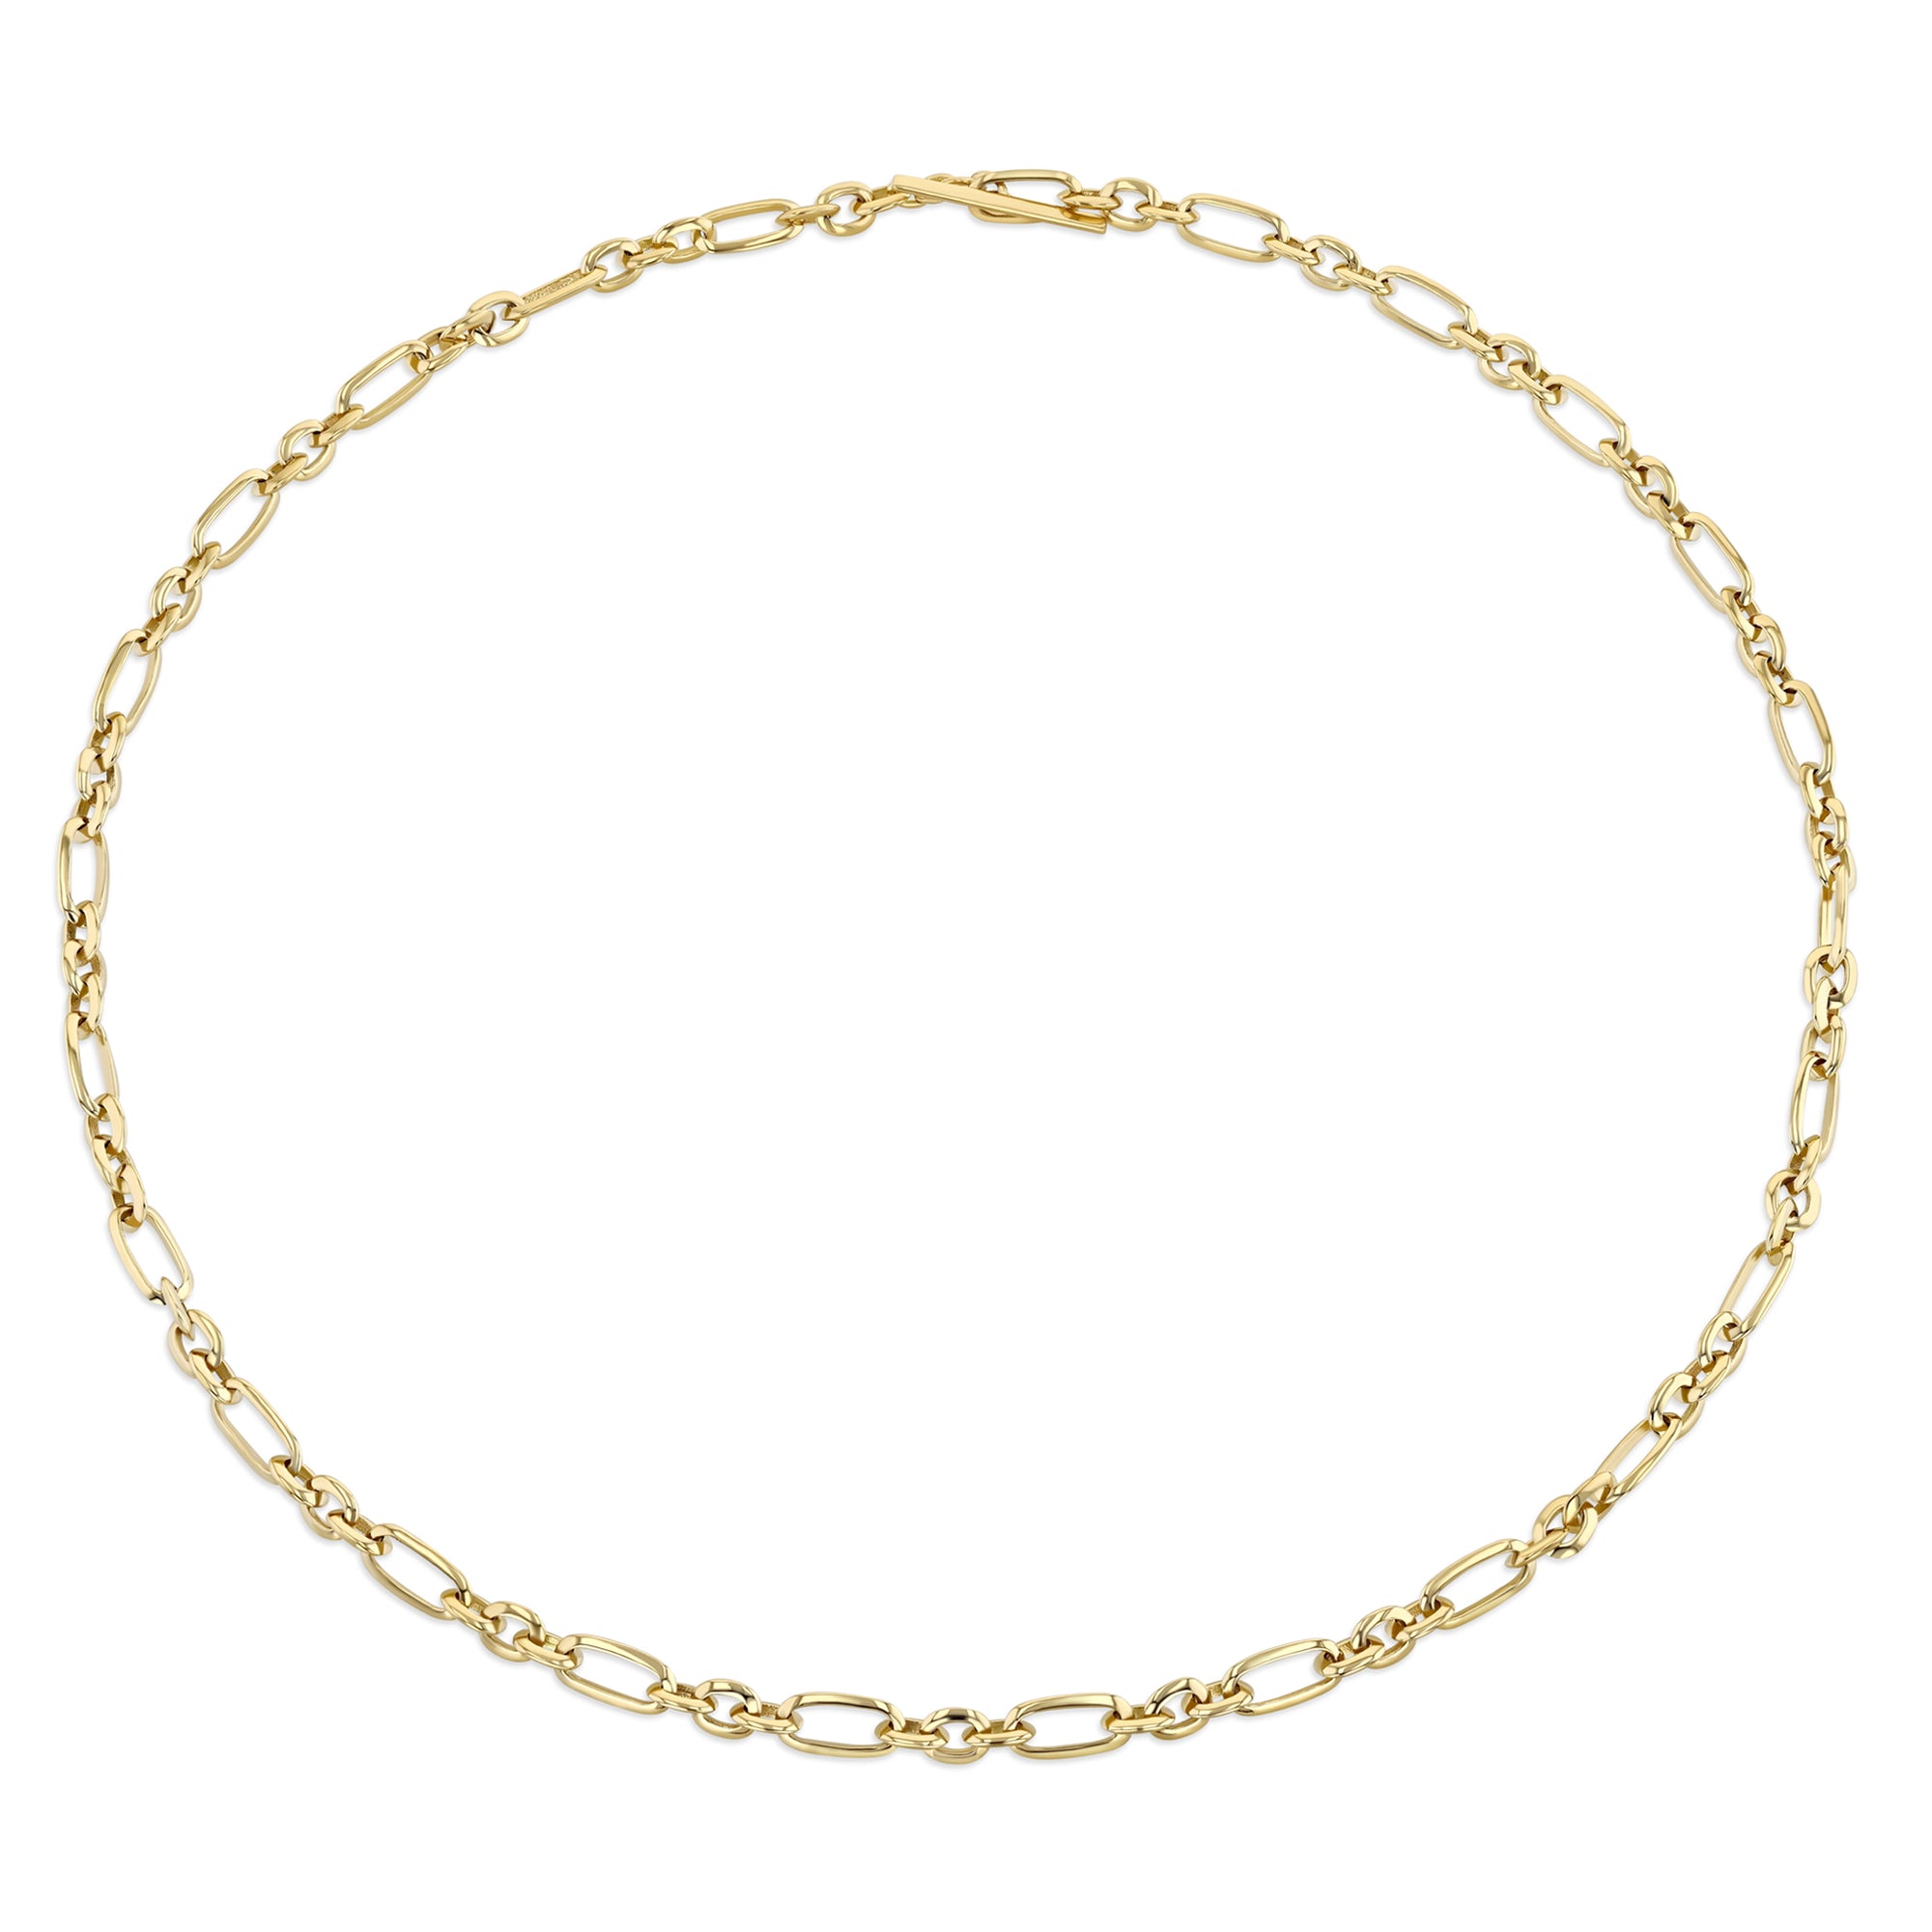 Louis Vuitton x NBA Chain Links Necklace XS Gold/Multicolor